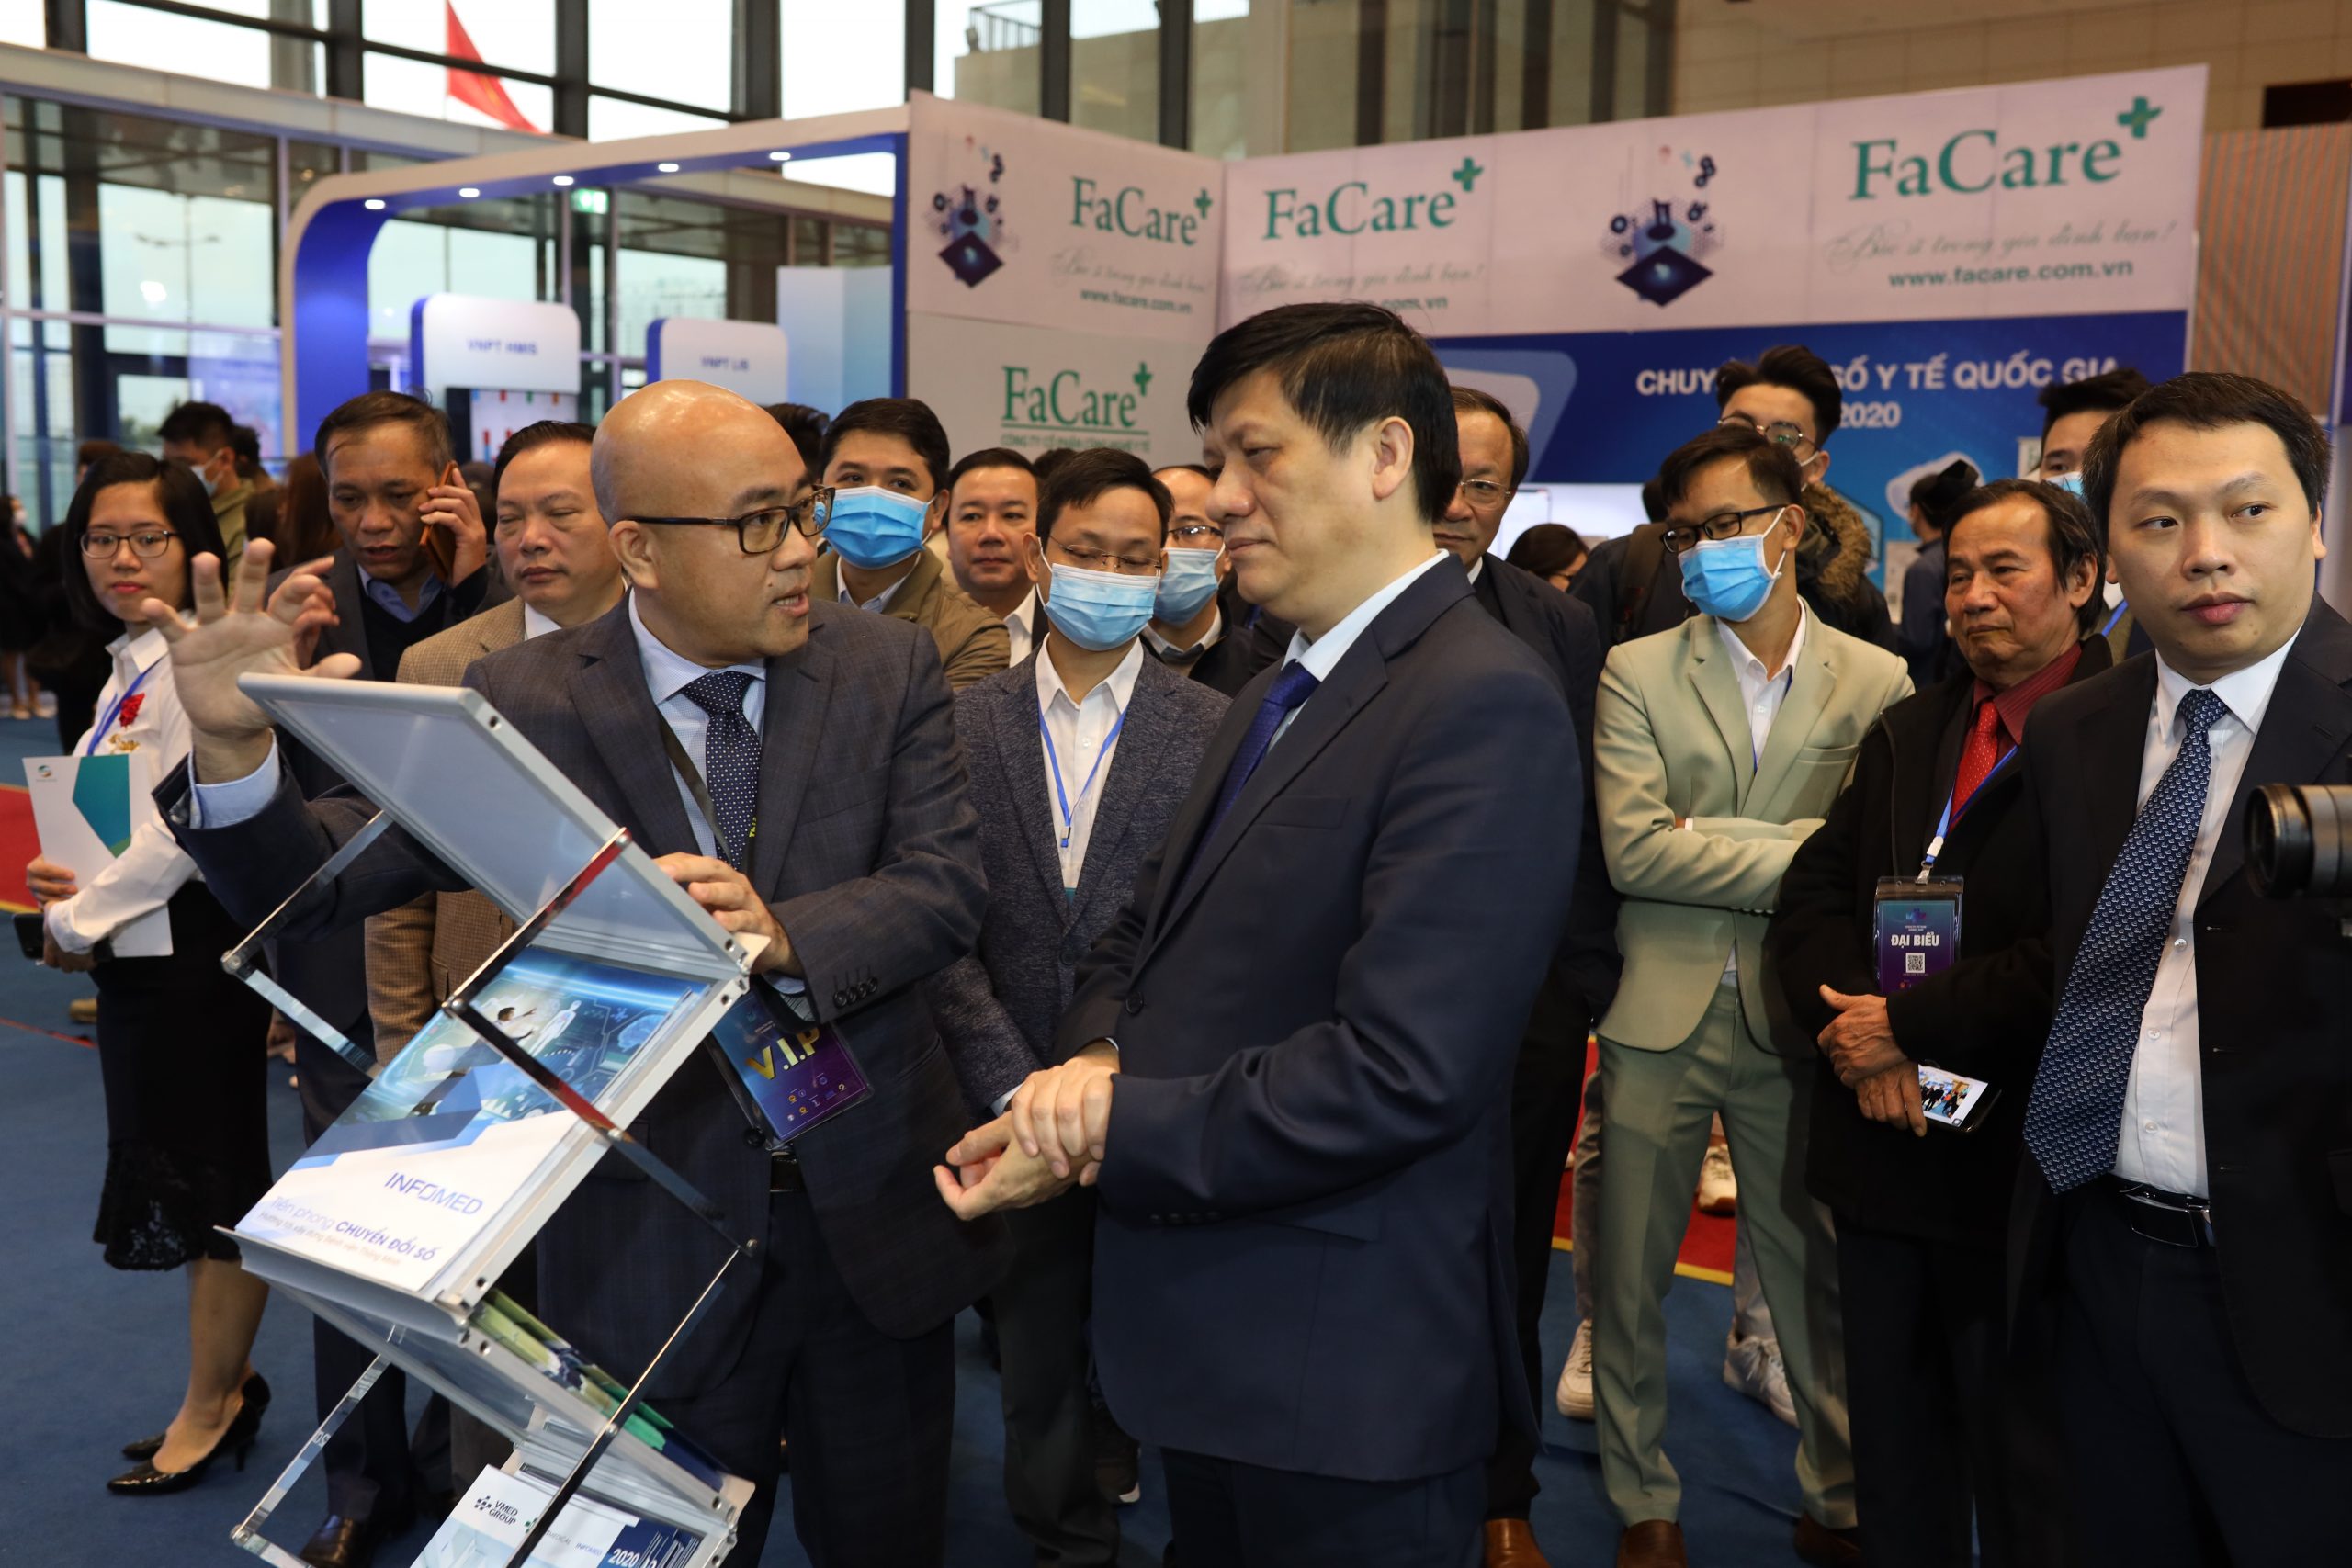 Bộ trưởng Bộ Y tế – Nguyễn Thanh Long ghi nhận và đánh giá cao những nền tảng VMED Group giới thiệu tại Hội nghị